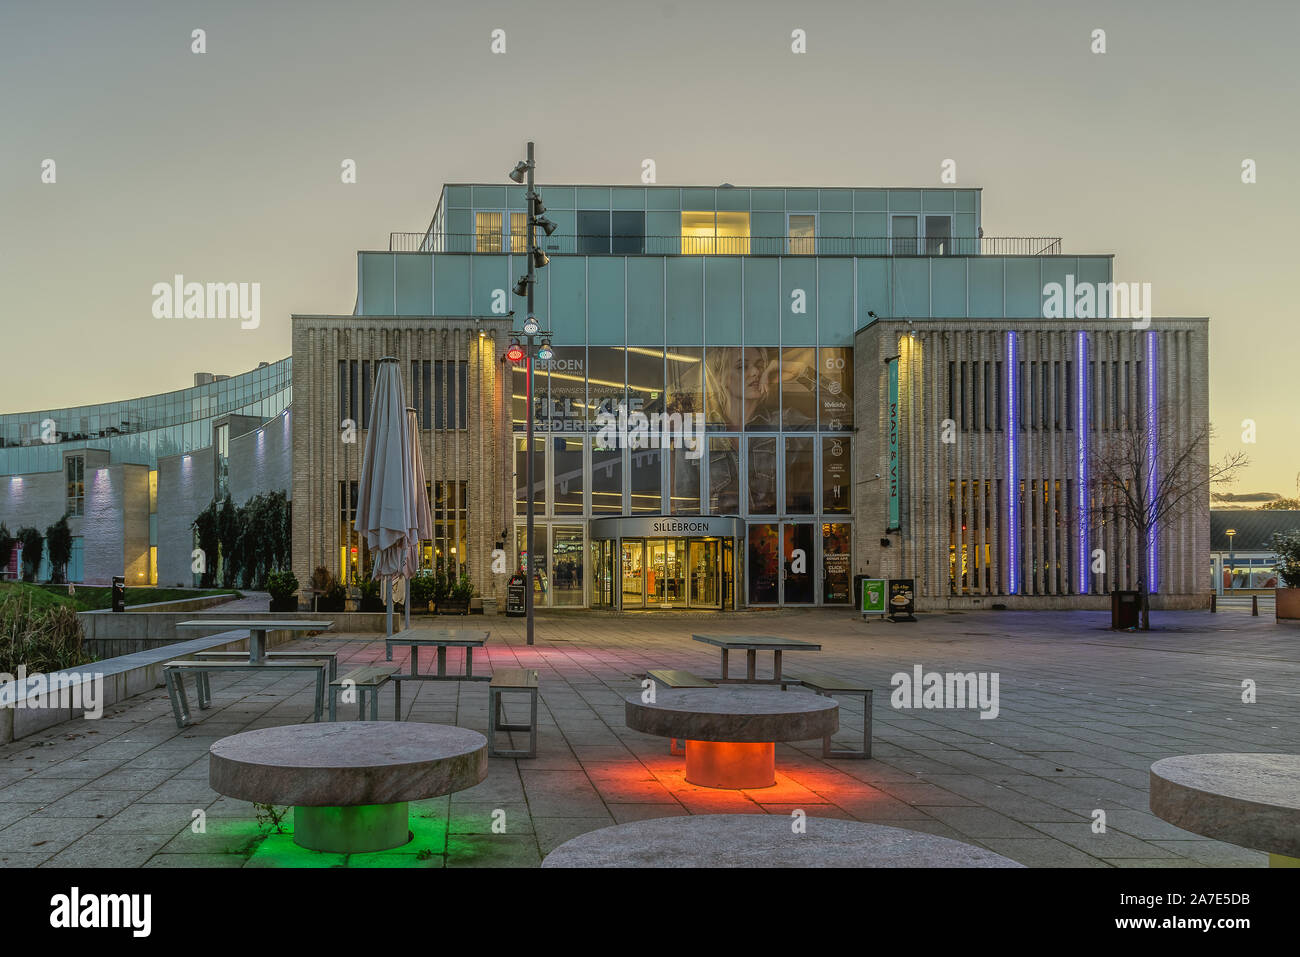 La fachada de un colorido centro comercial en la luz de la tarde en el centro de Frederikssund, Dinamarca, 29 de octubre de 2019 Foto de stock